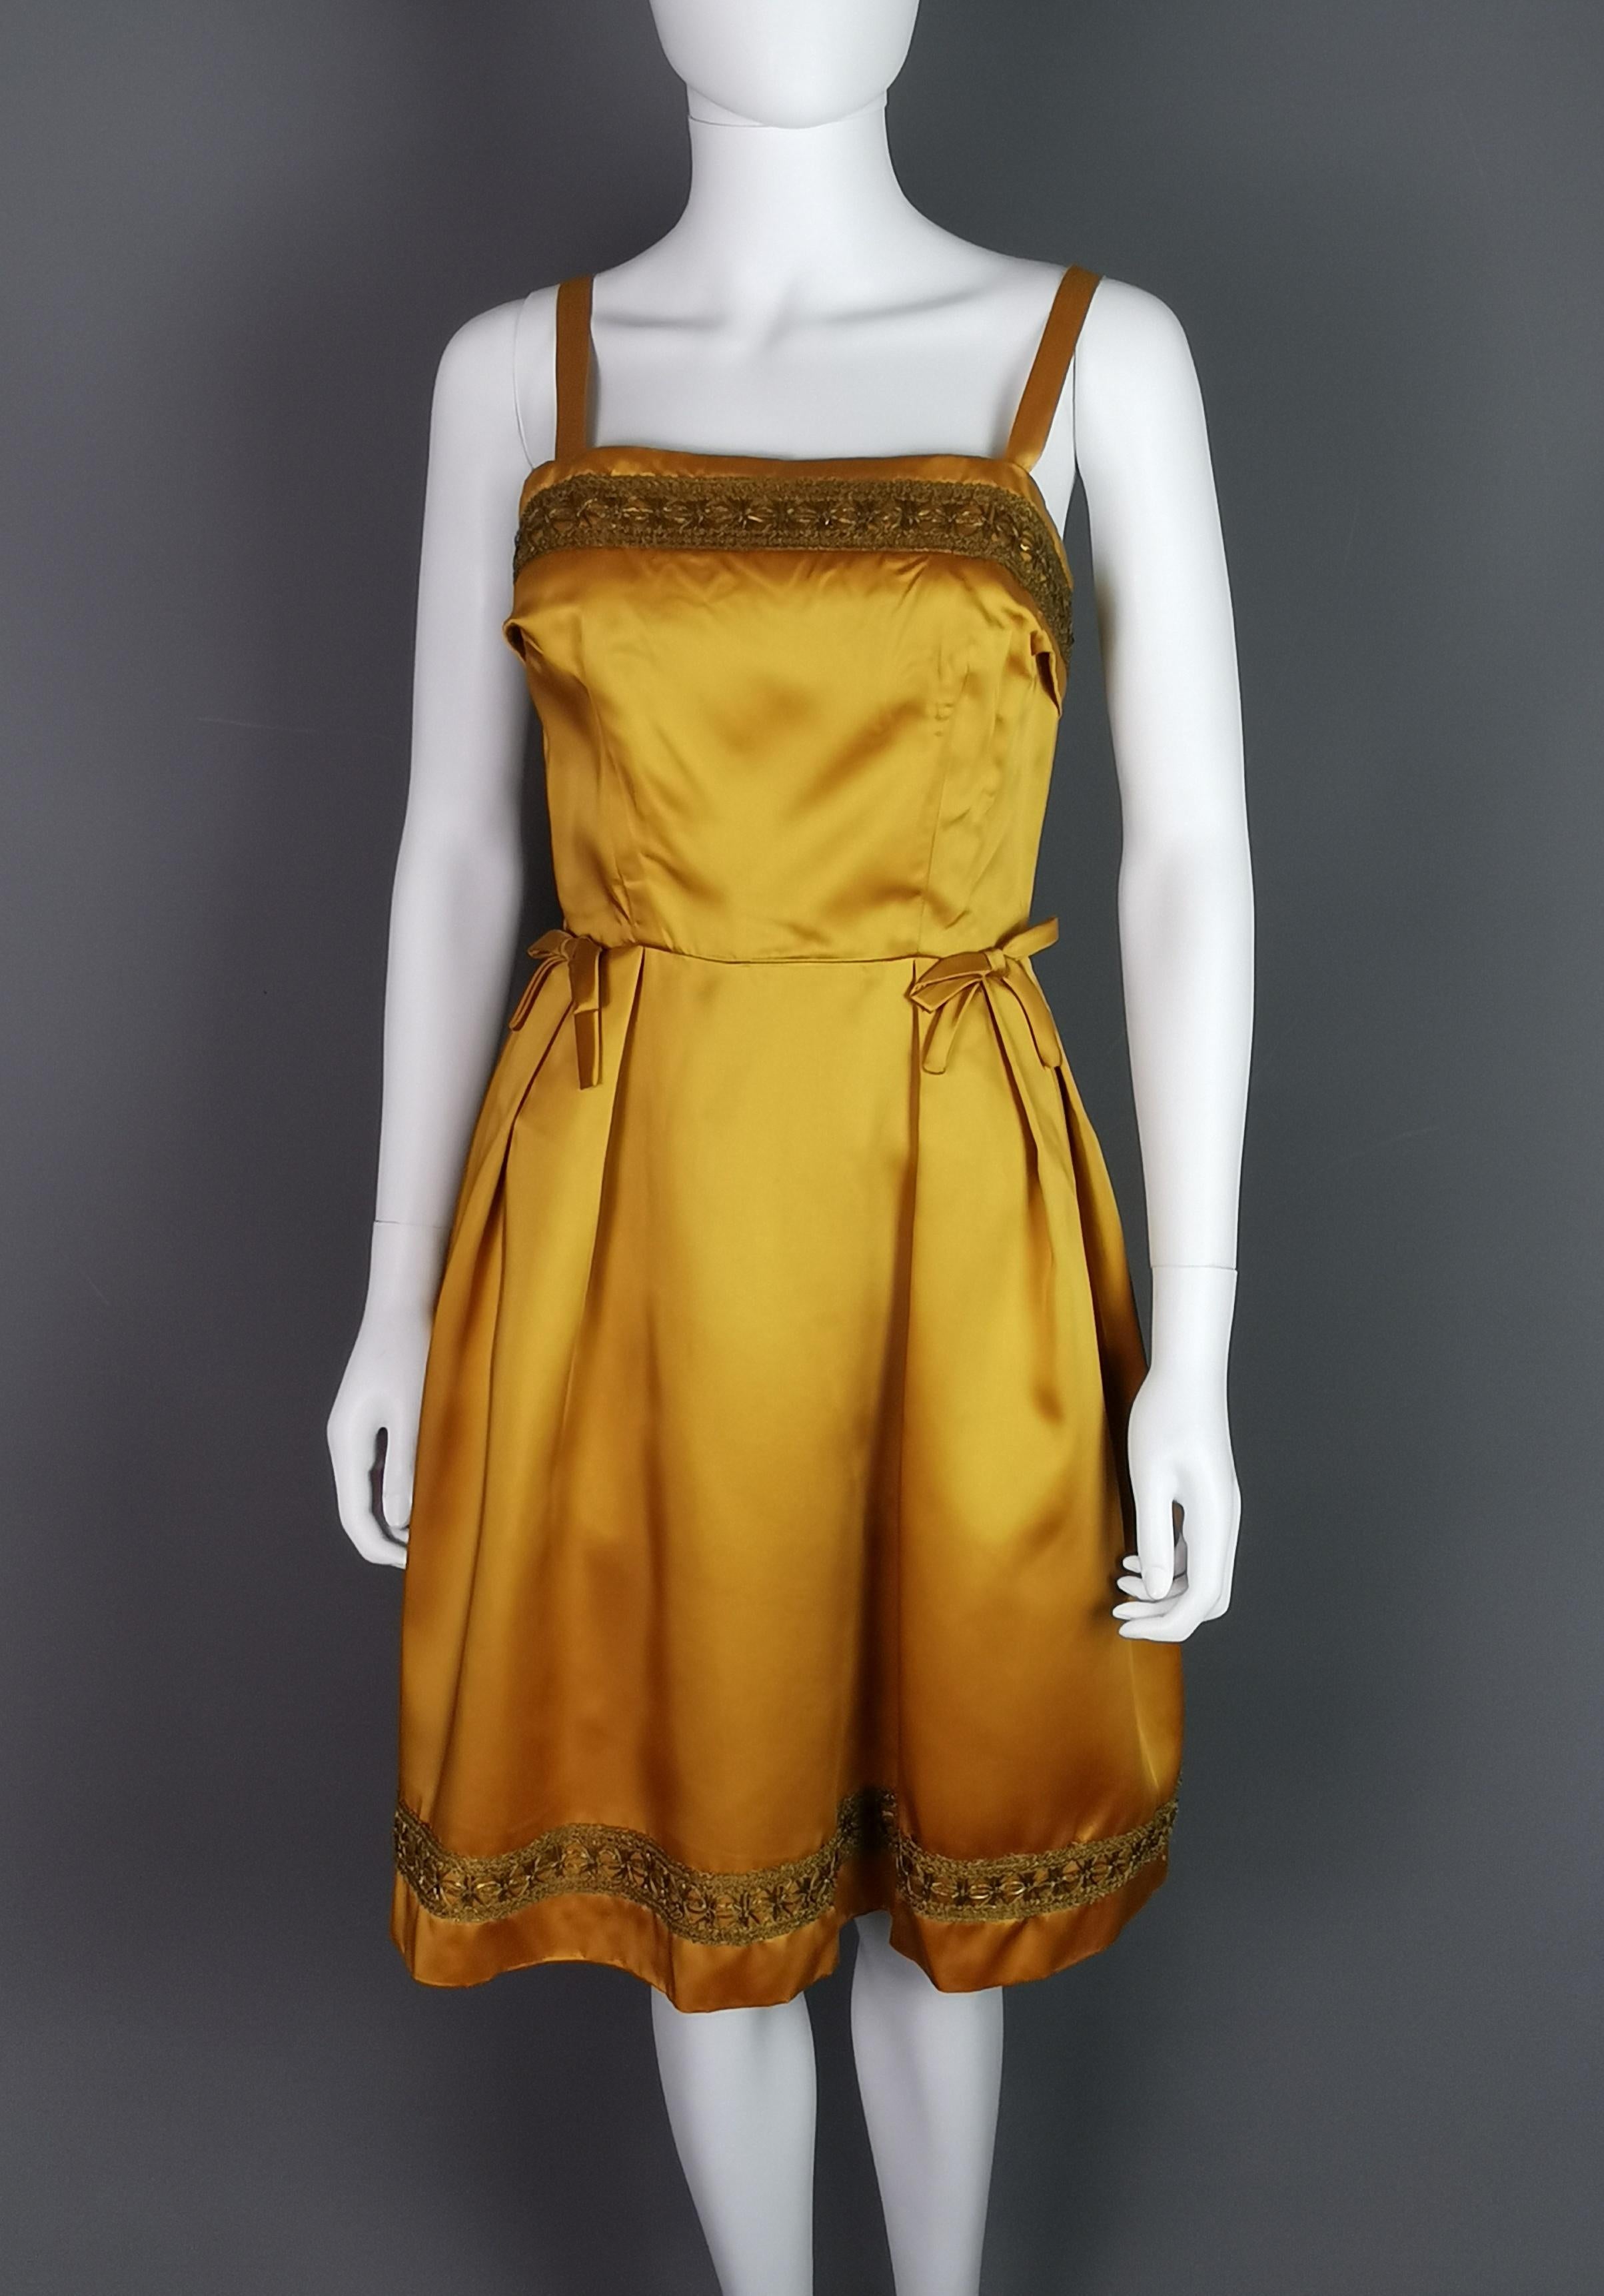 Ein wunderschönes Vintage-Cocktailkleid von Kitty Copeland aus den frühen 1960er Jahren.

Hergestellt aus schwerem kupfer/goldenem Satinstoff und vollständig mit dem Originalfutter gefüttert.

Es ist ein ärmelloses Kleid mit mitteldicken Trägern und